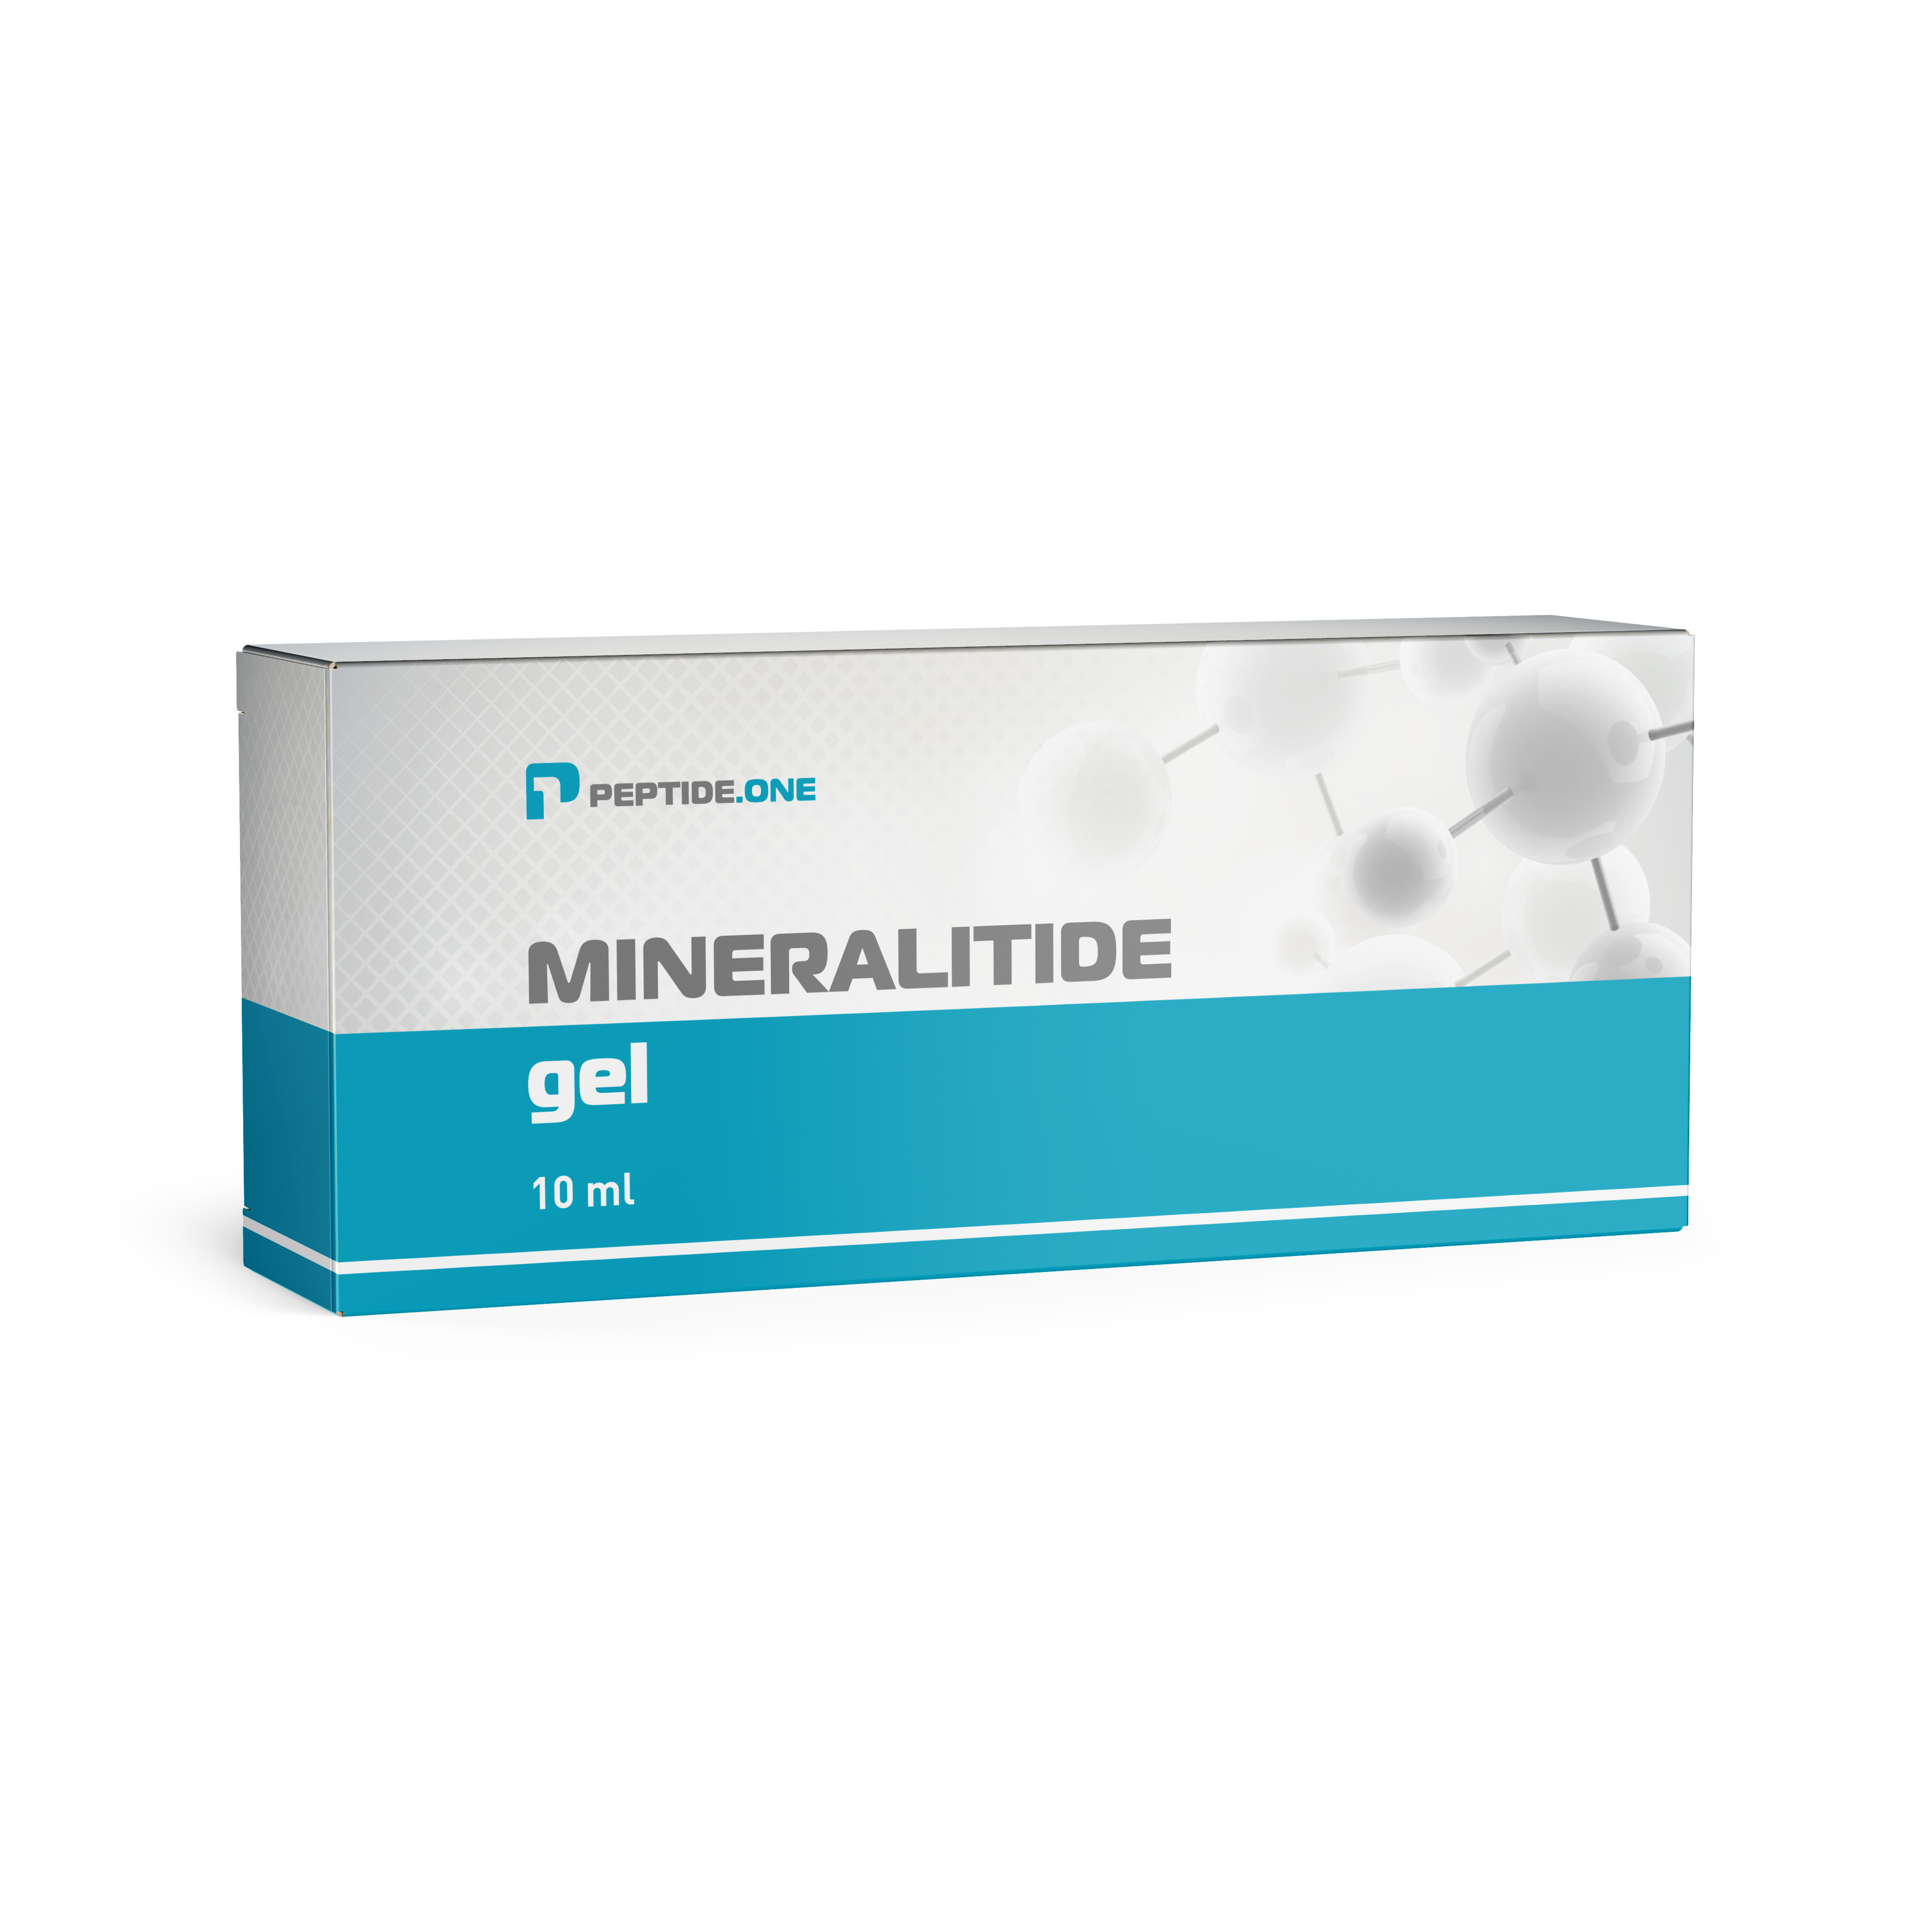 Mineralitide